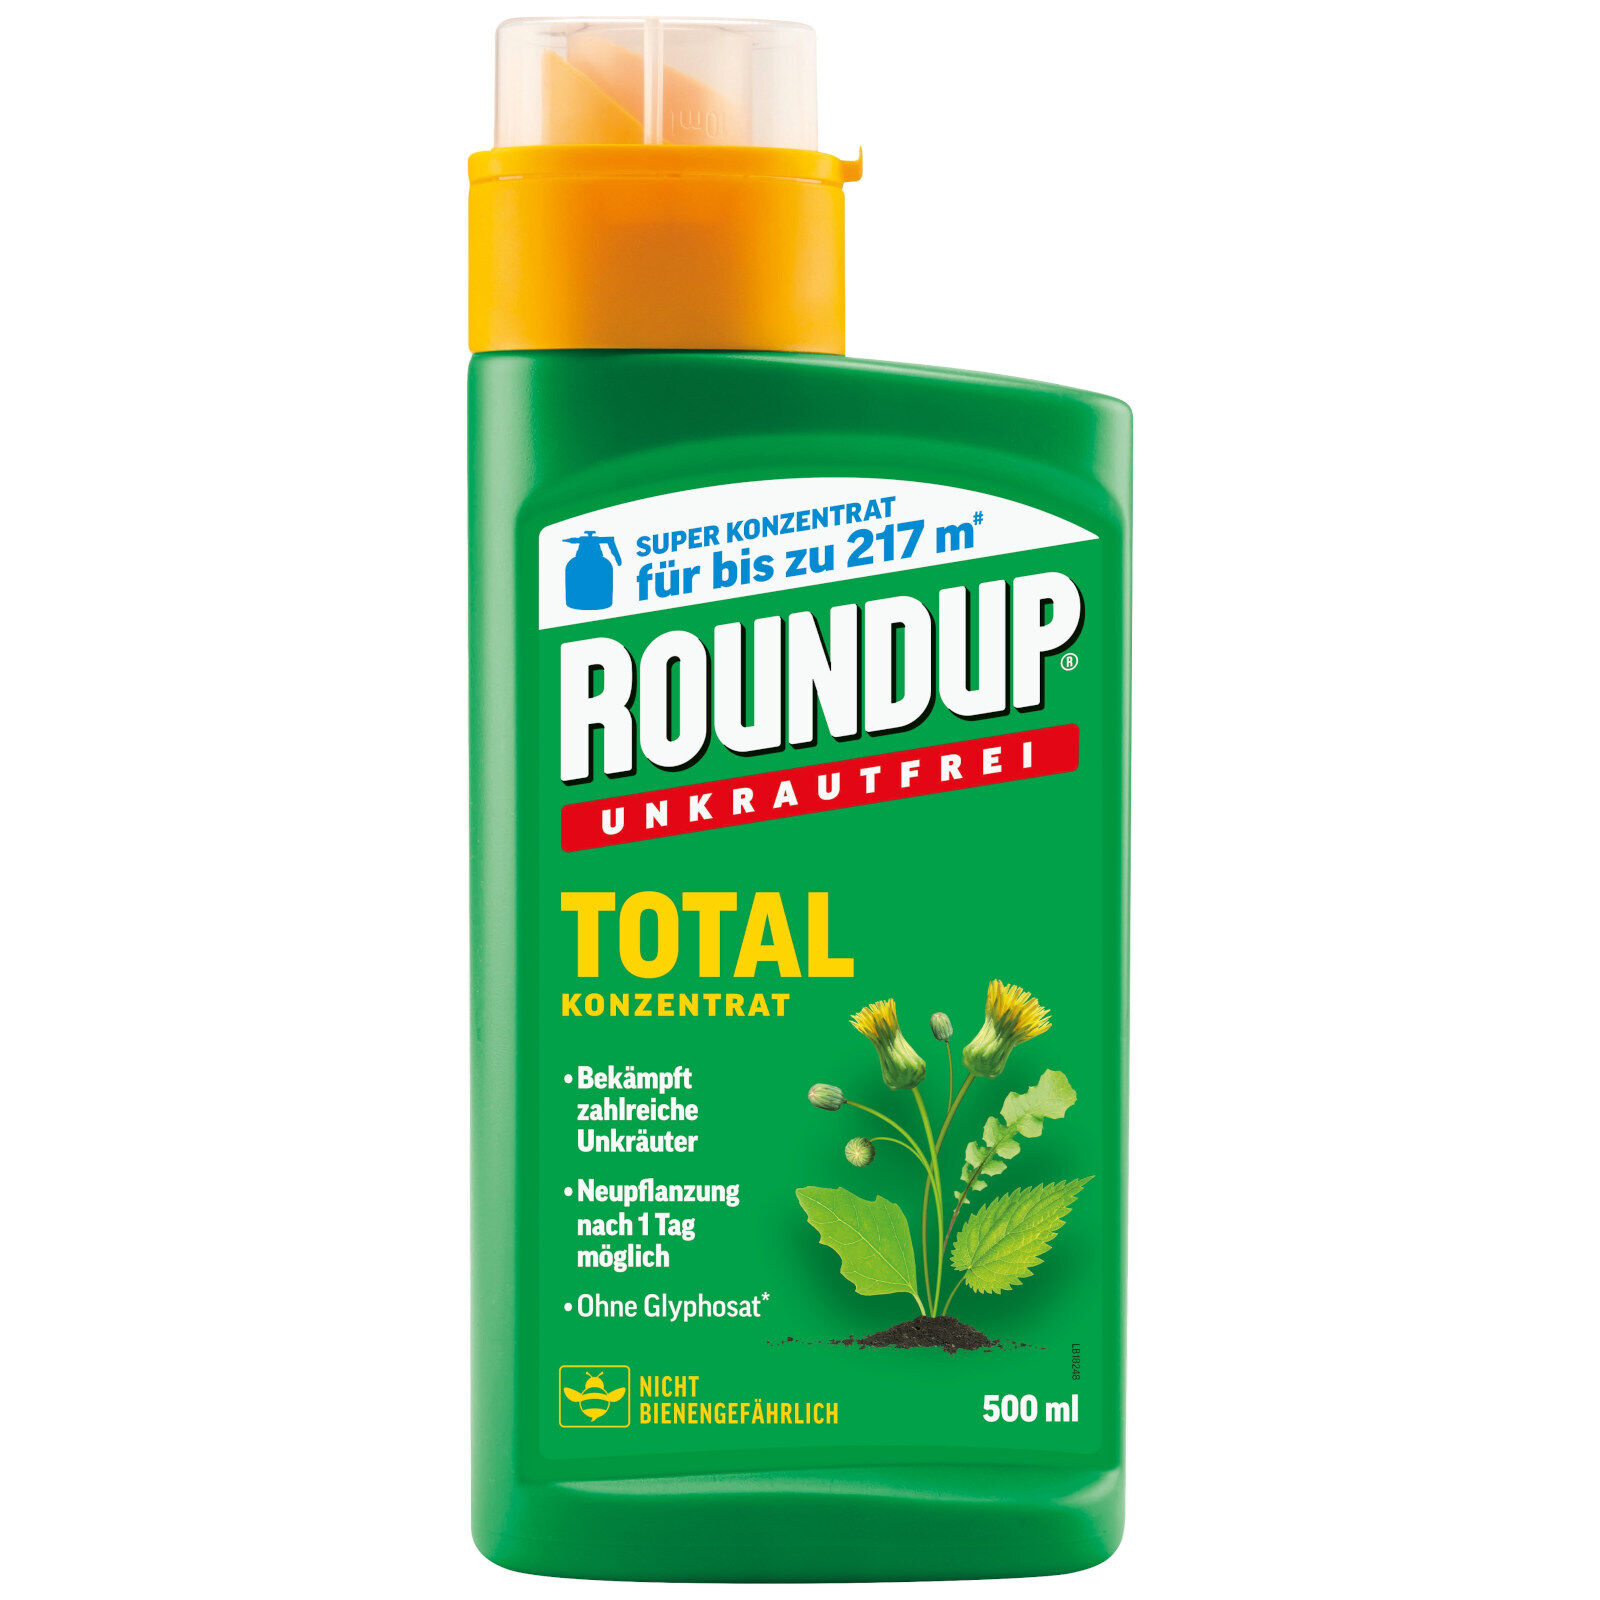 Roundup Unkrautfrei Total Konzentrat 500 ml Unkrautvernichter Unkrautbekämpfung